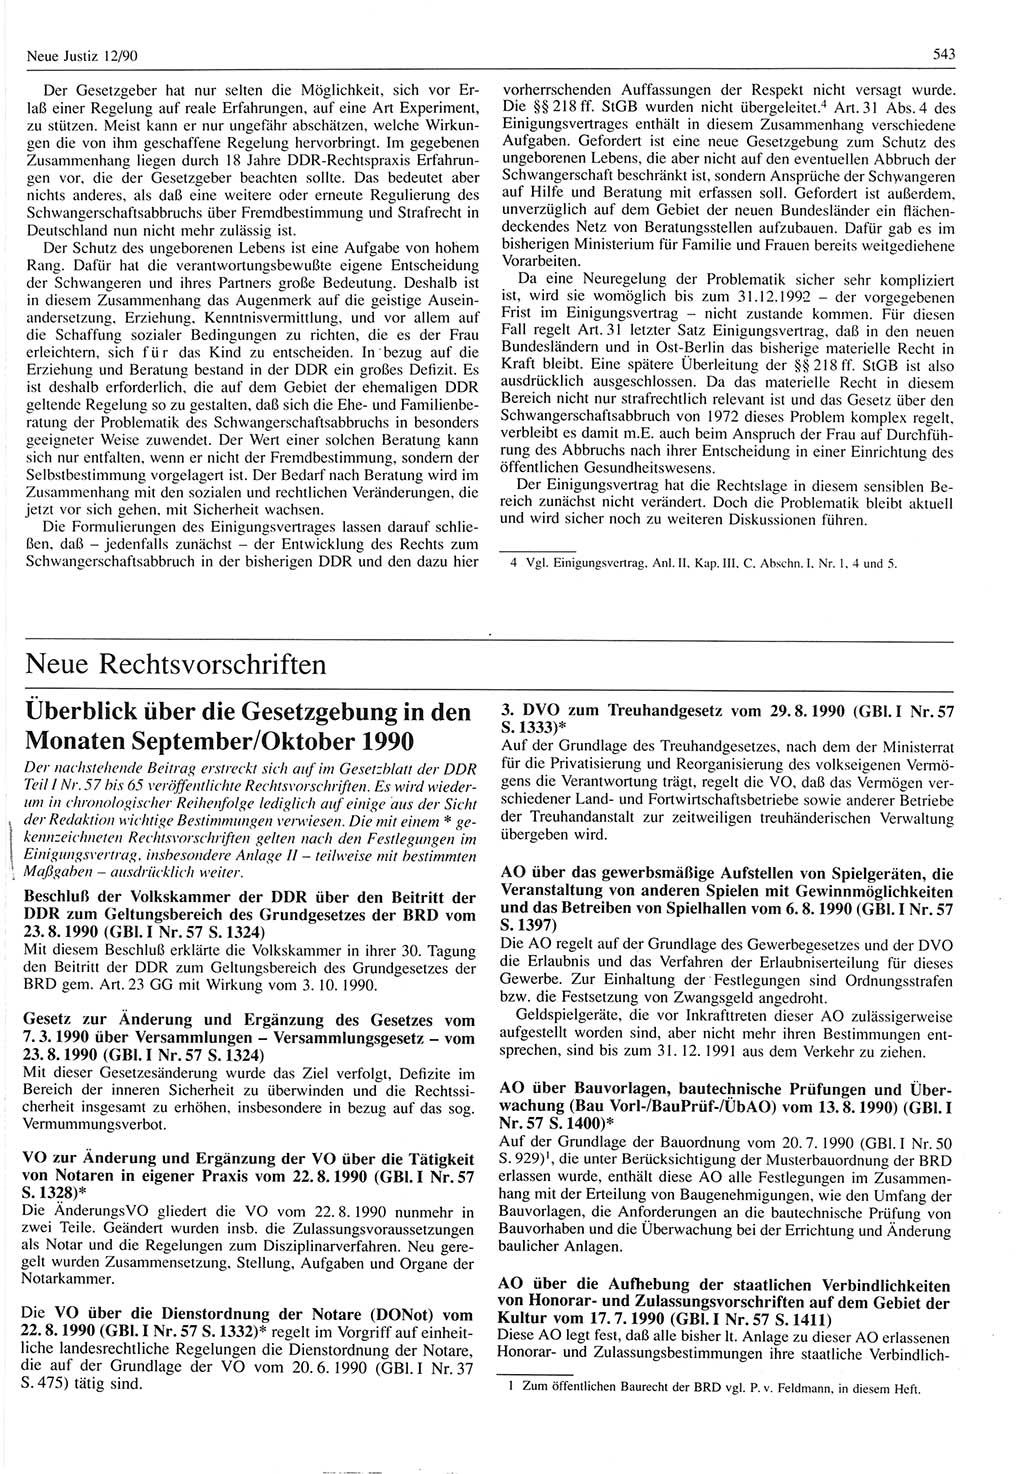 Neue Justiz (NJ), Zeitschrift für Rechtsetzung und Rechtsanwendung [Deutsche Demokratische Republik (DDR)], 44. Jahrgang 1990, Seite 543 (NJ DDR 1990, S. 543)